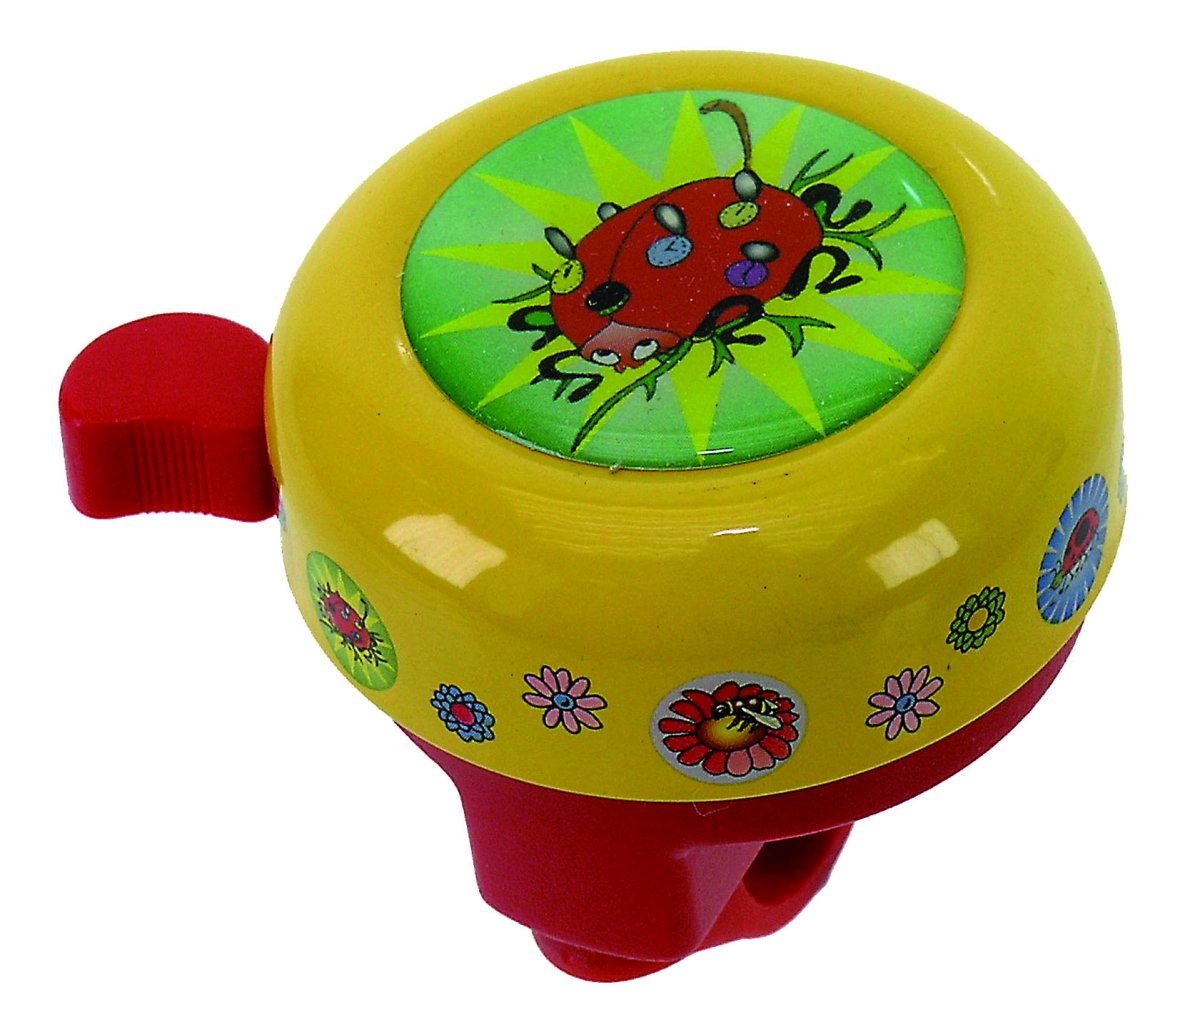 Звонок 5-420119 сталь/пластик детский с 3D-рисунком 6 цветов в ассортименте M-WAVE